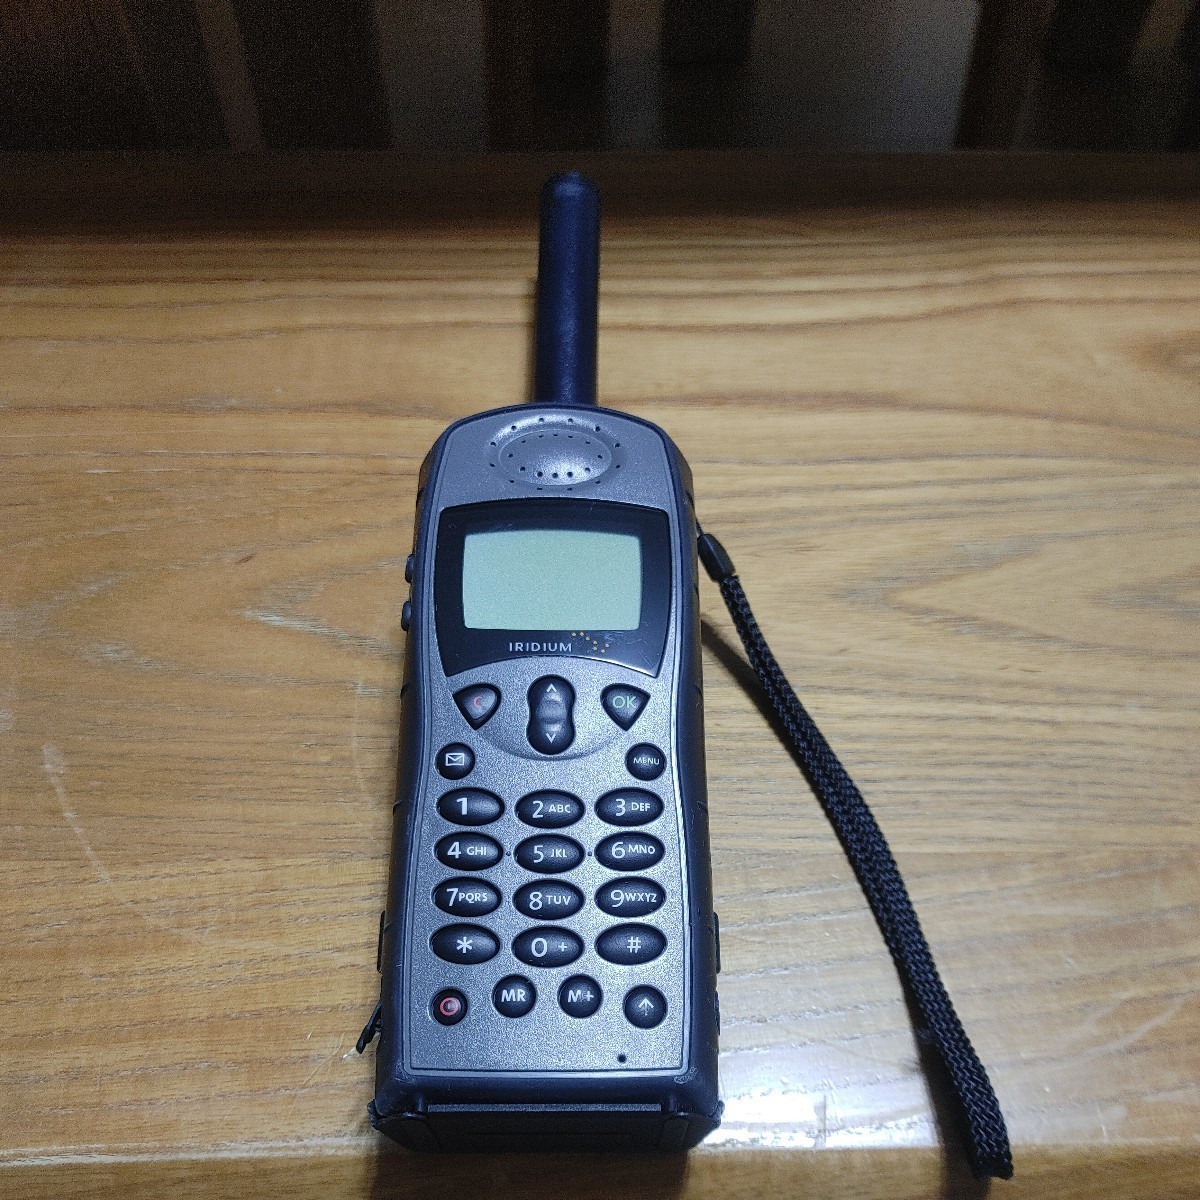 Iridium 9505a единственный спутниковый мобильный телефон, который можно использовать во всем мире